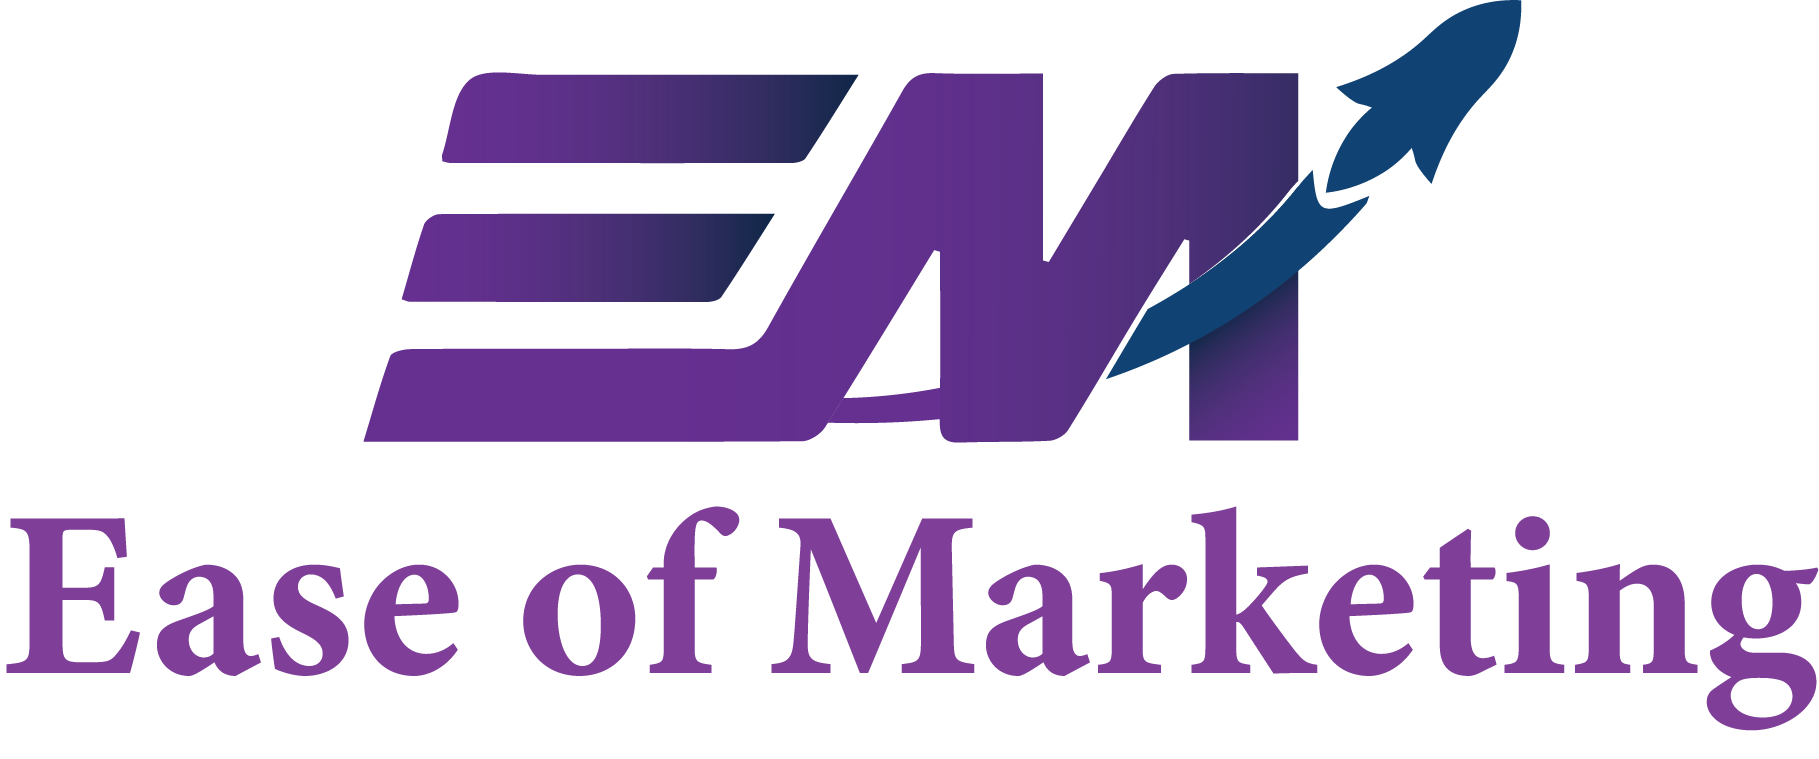 ease of marketing logo